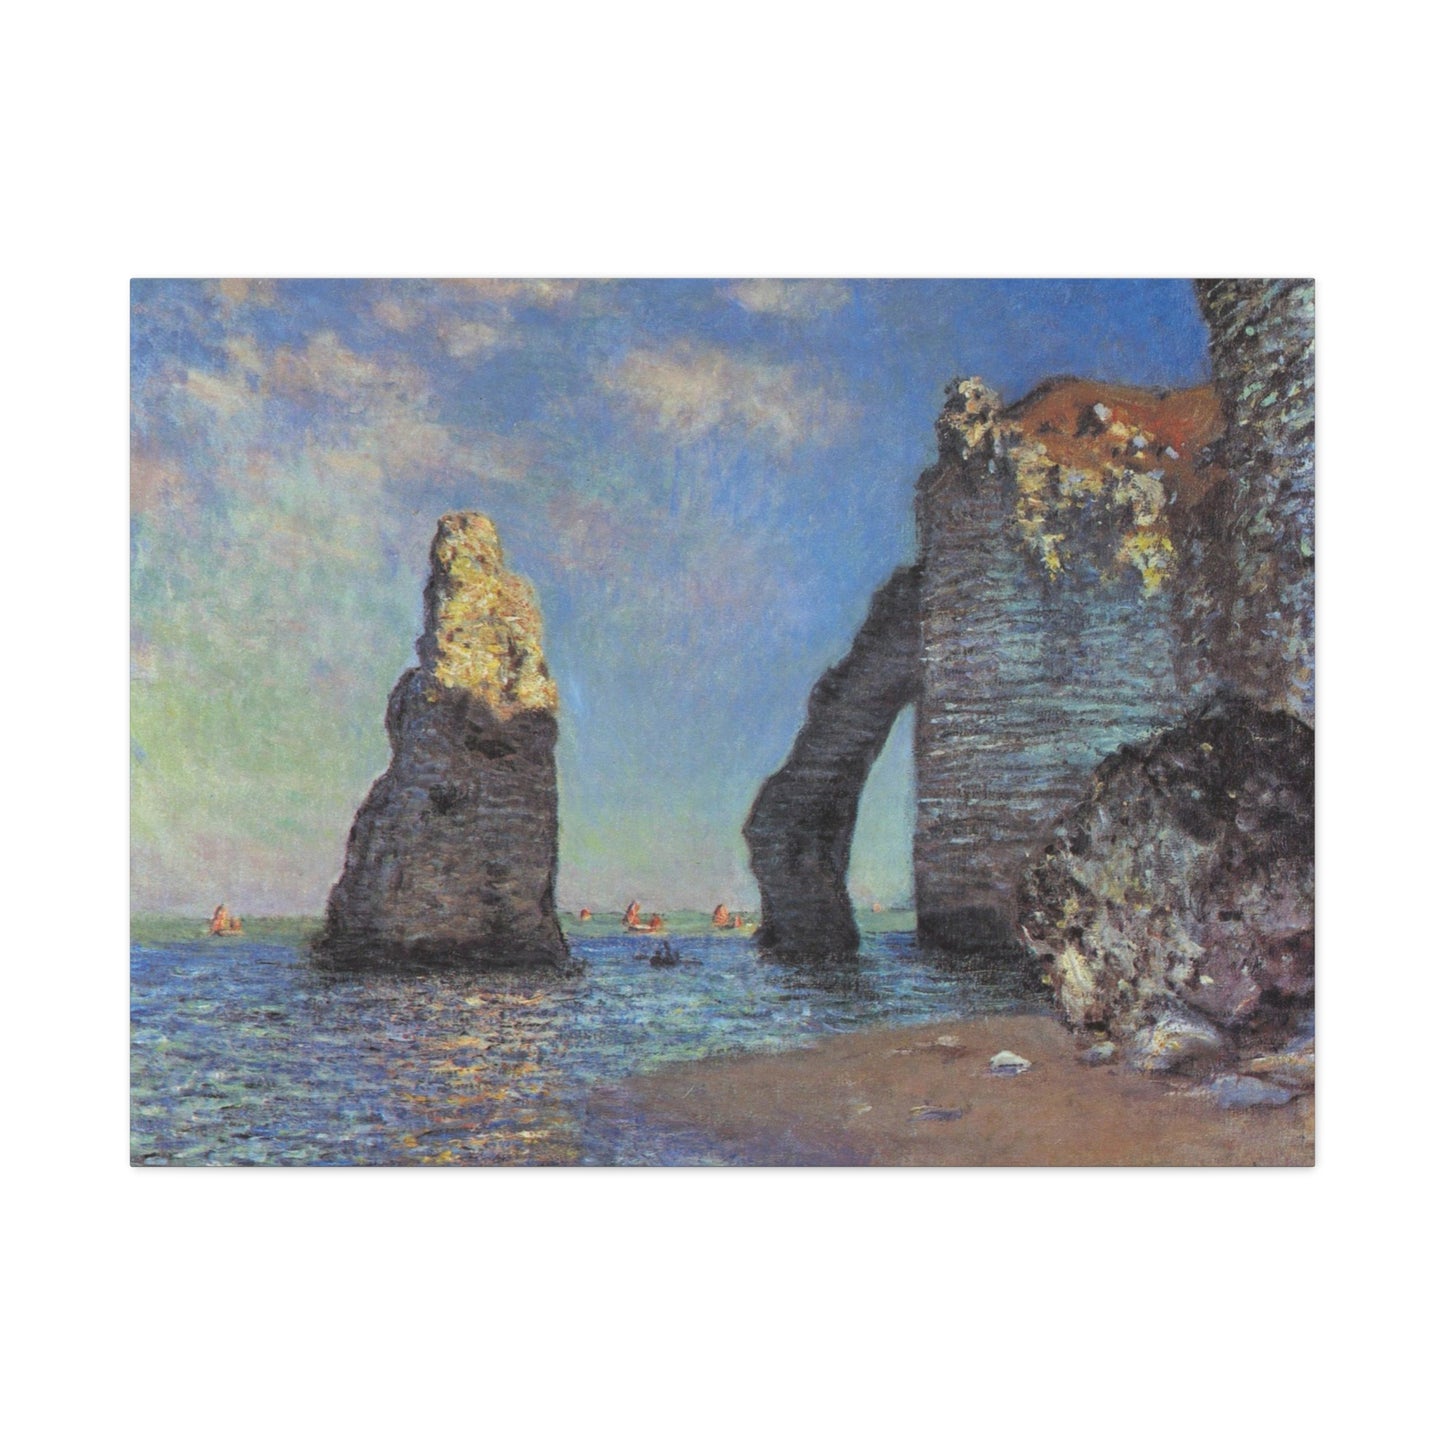 The Cliffs at Etretat by Claude Monet - Canvas Print